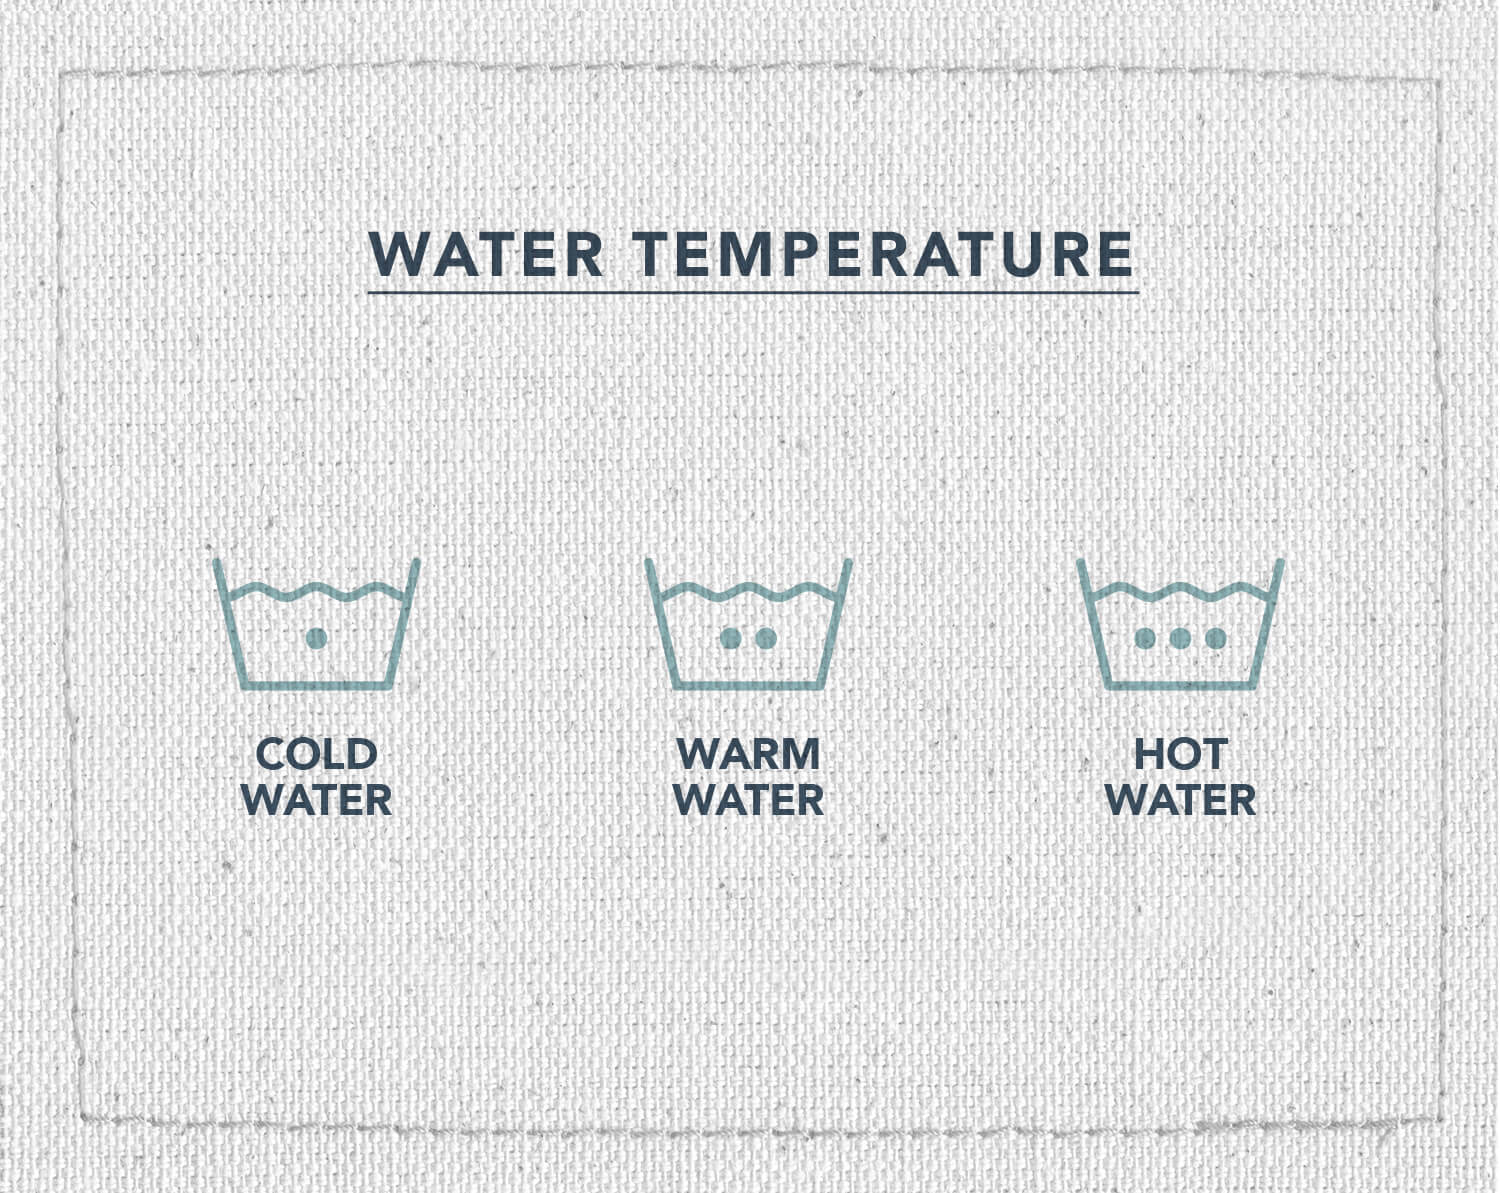 Une infographie de trois symboles d'entretien du tissu, indiquant ce que signifie le symbole montre à quelle température vous devez laver vos vêtements, eau froide, eau tiède et eau chaude